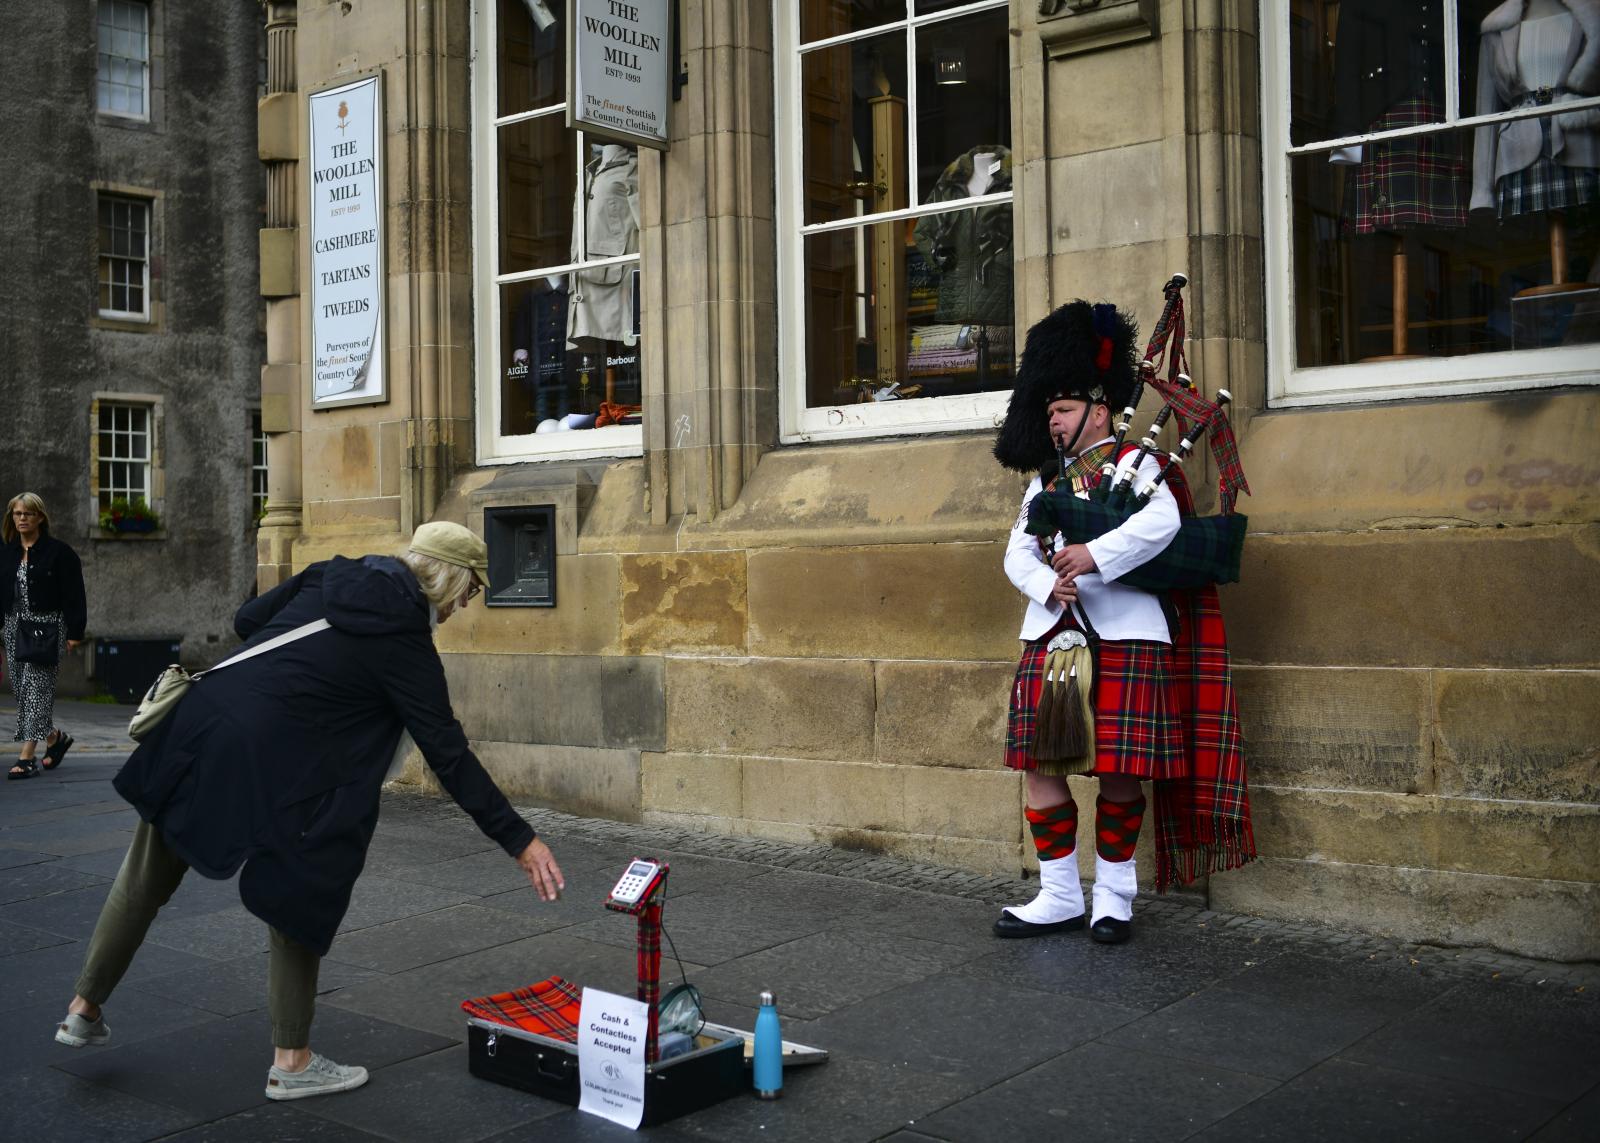 Image from Daily Life UK - Edinburgh